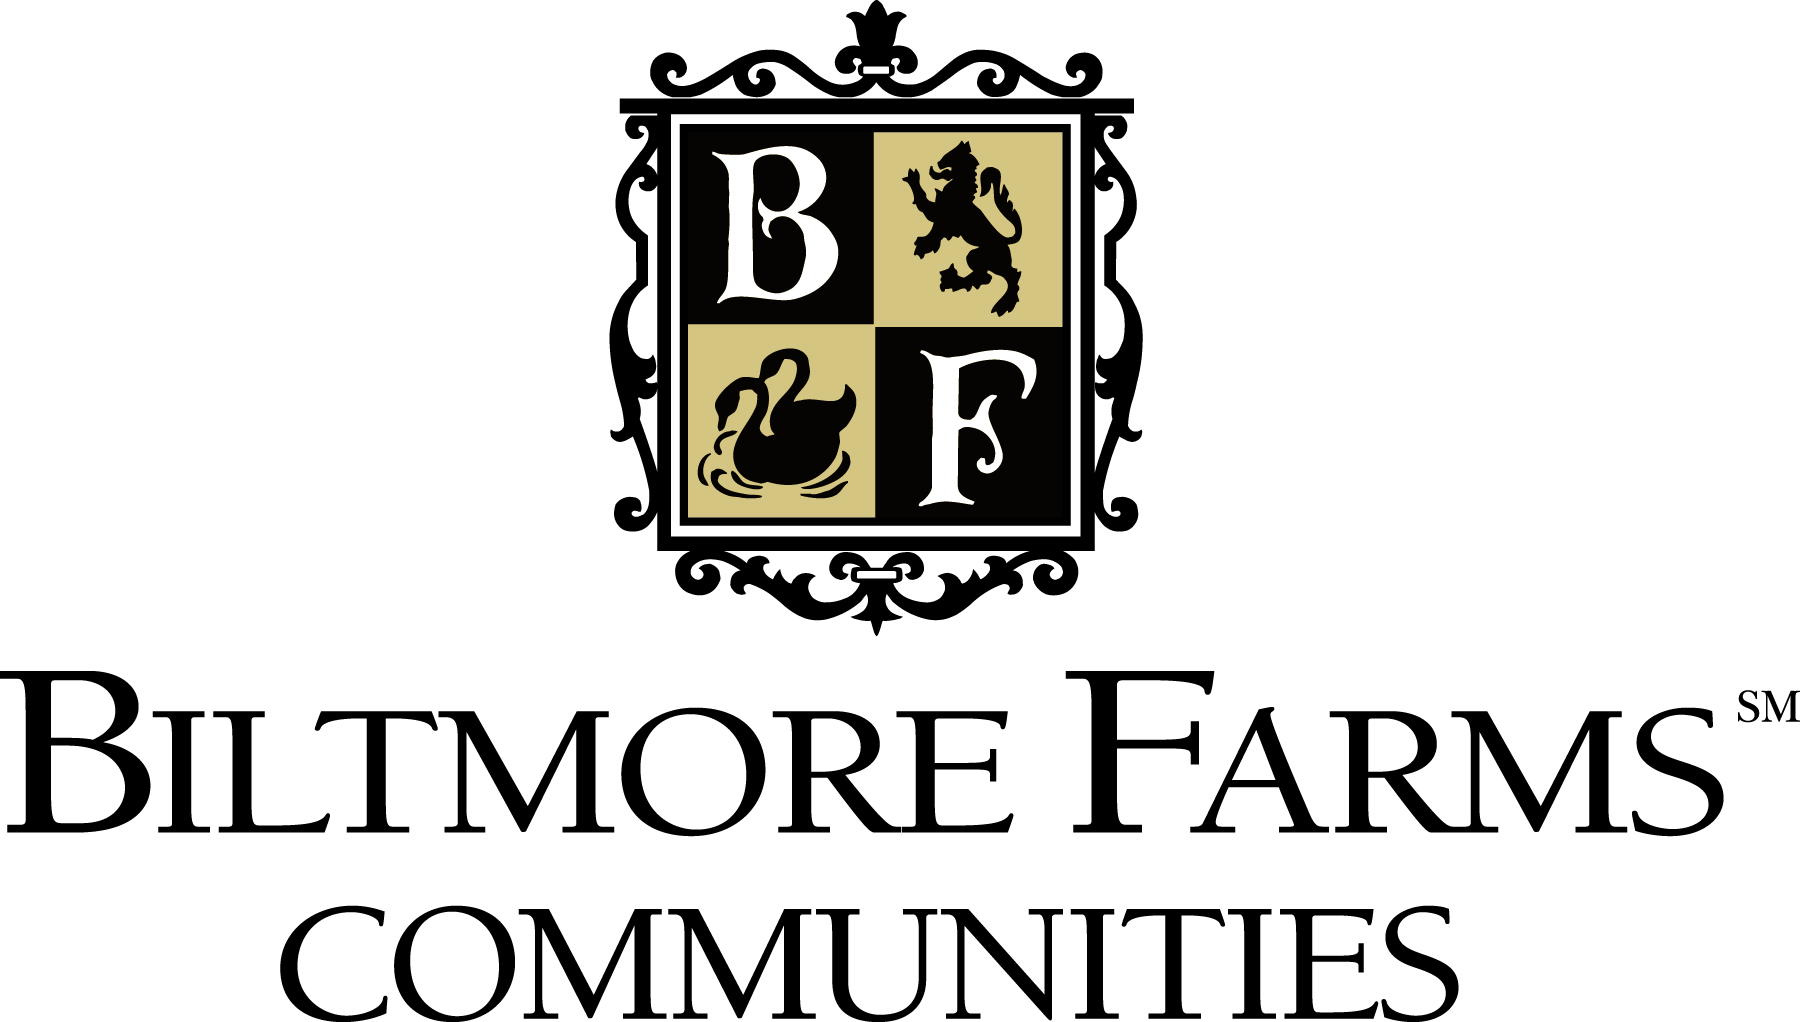 Biltmore Farms Communities